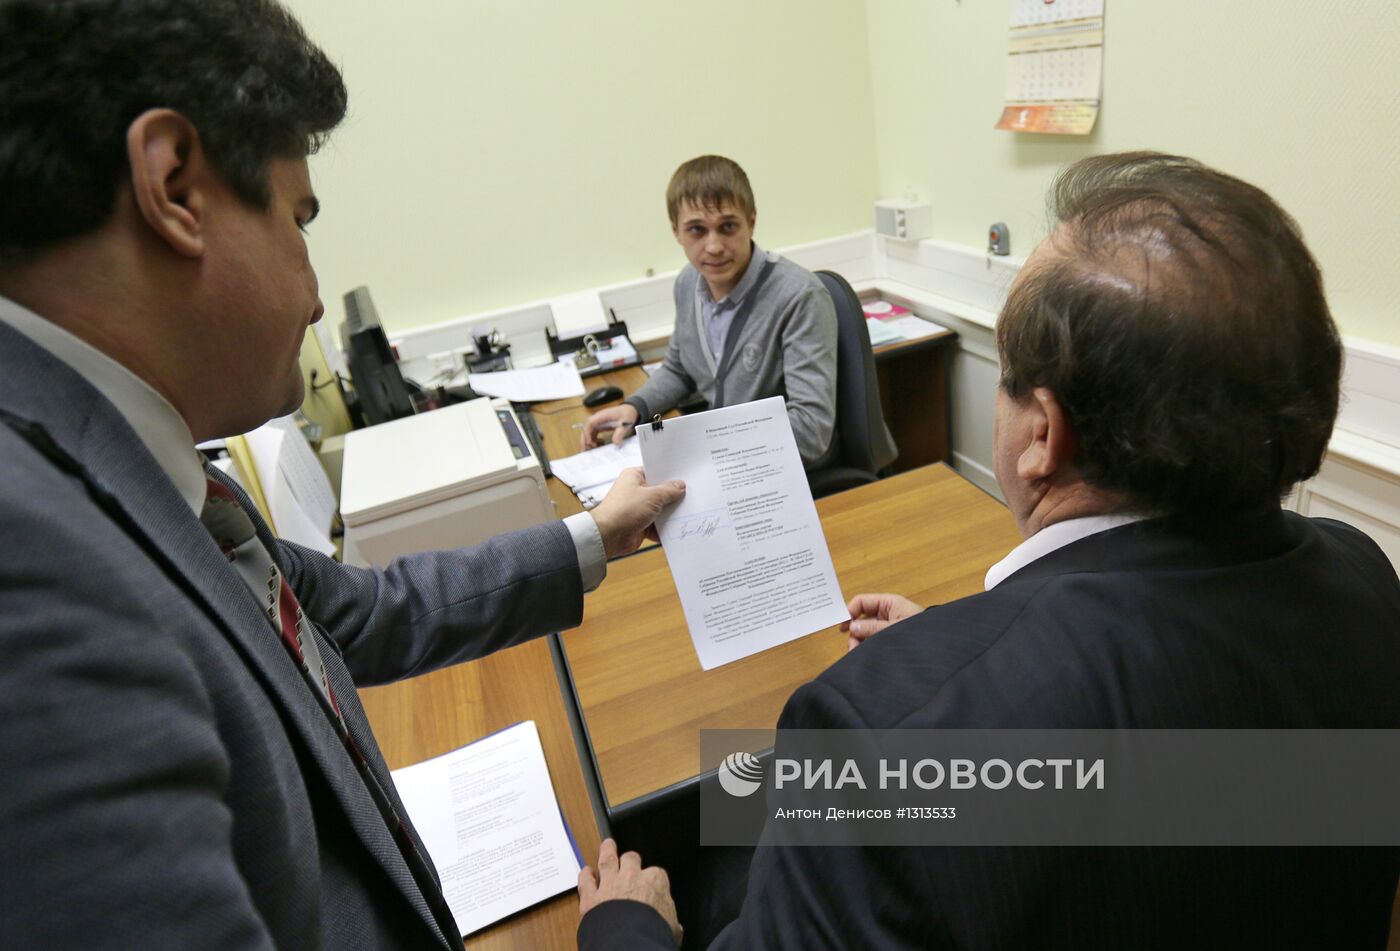 Экс-депутат Геннадий Гудков подал иск в Верховный суд РФ